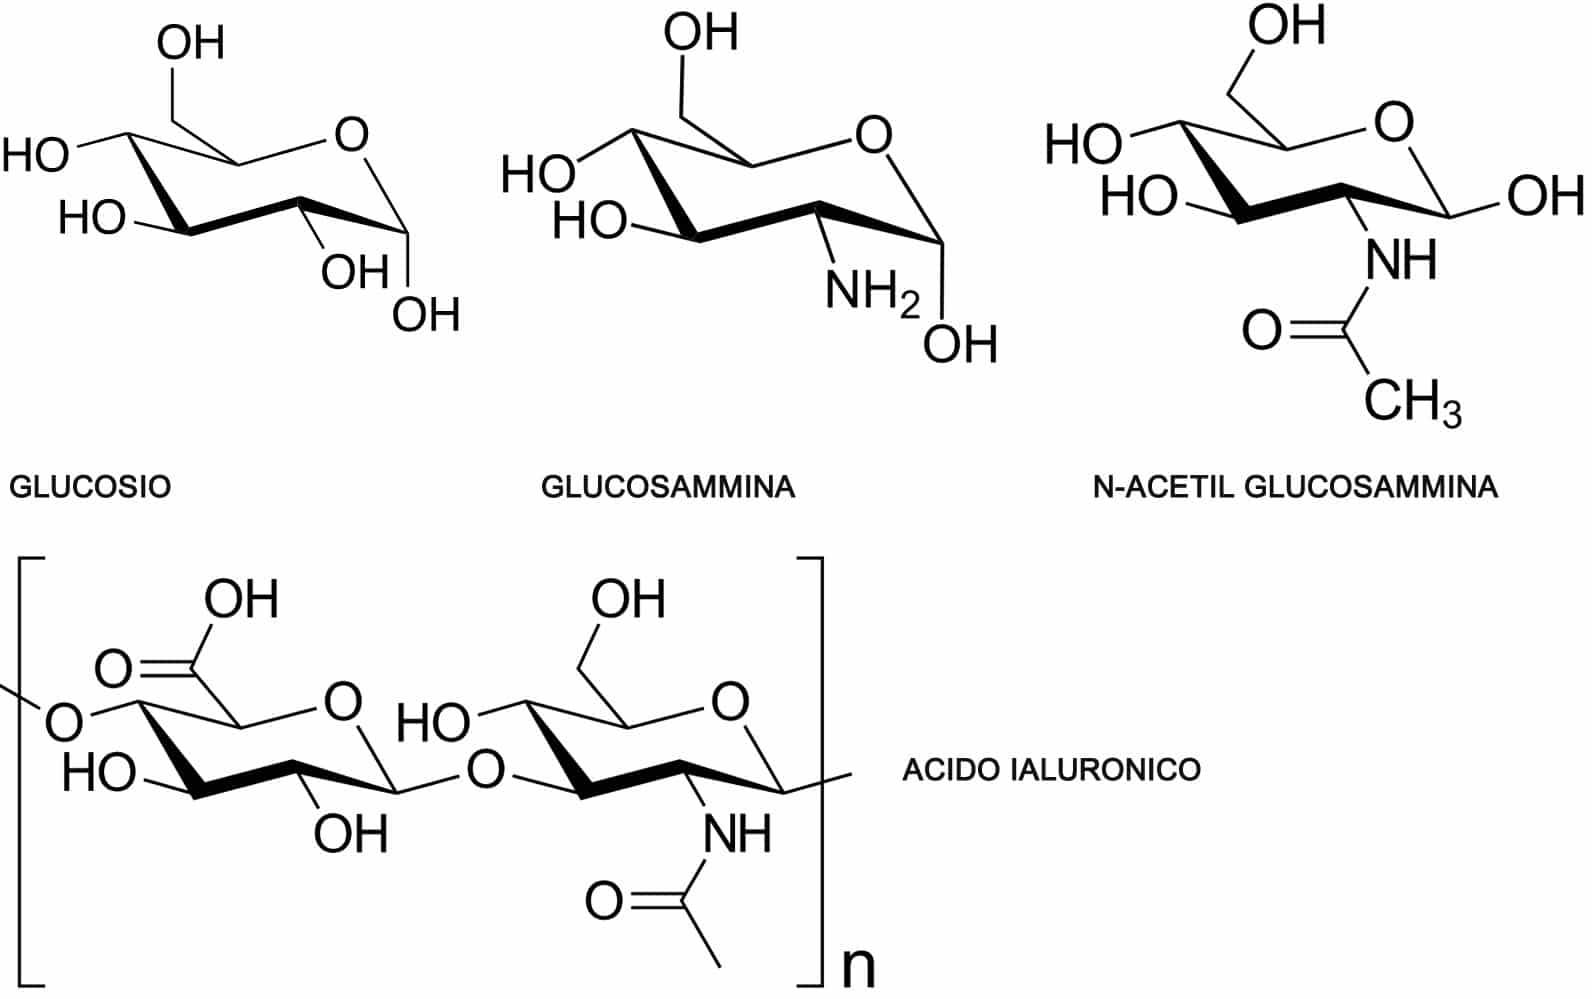 Amminoazuccheri - Glucosammina e N-ACetil Glucosammina